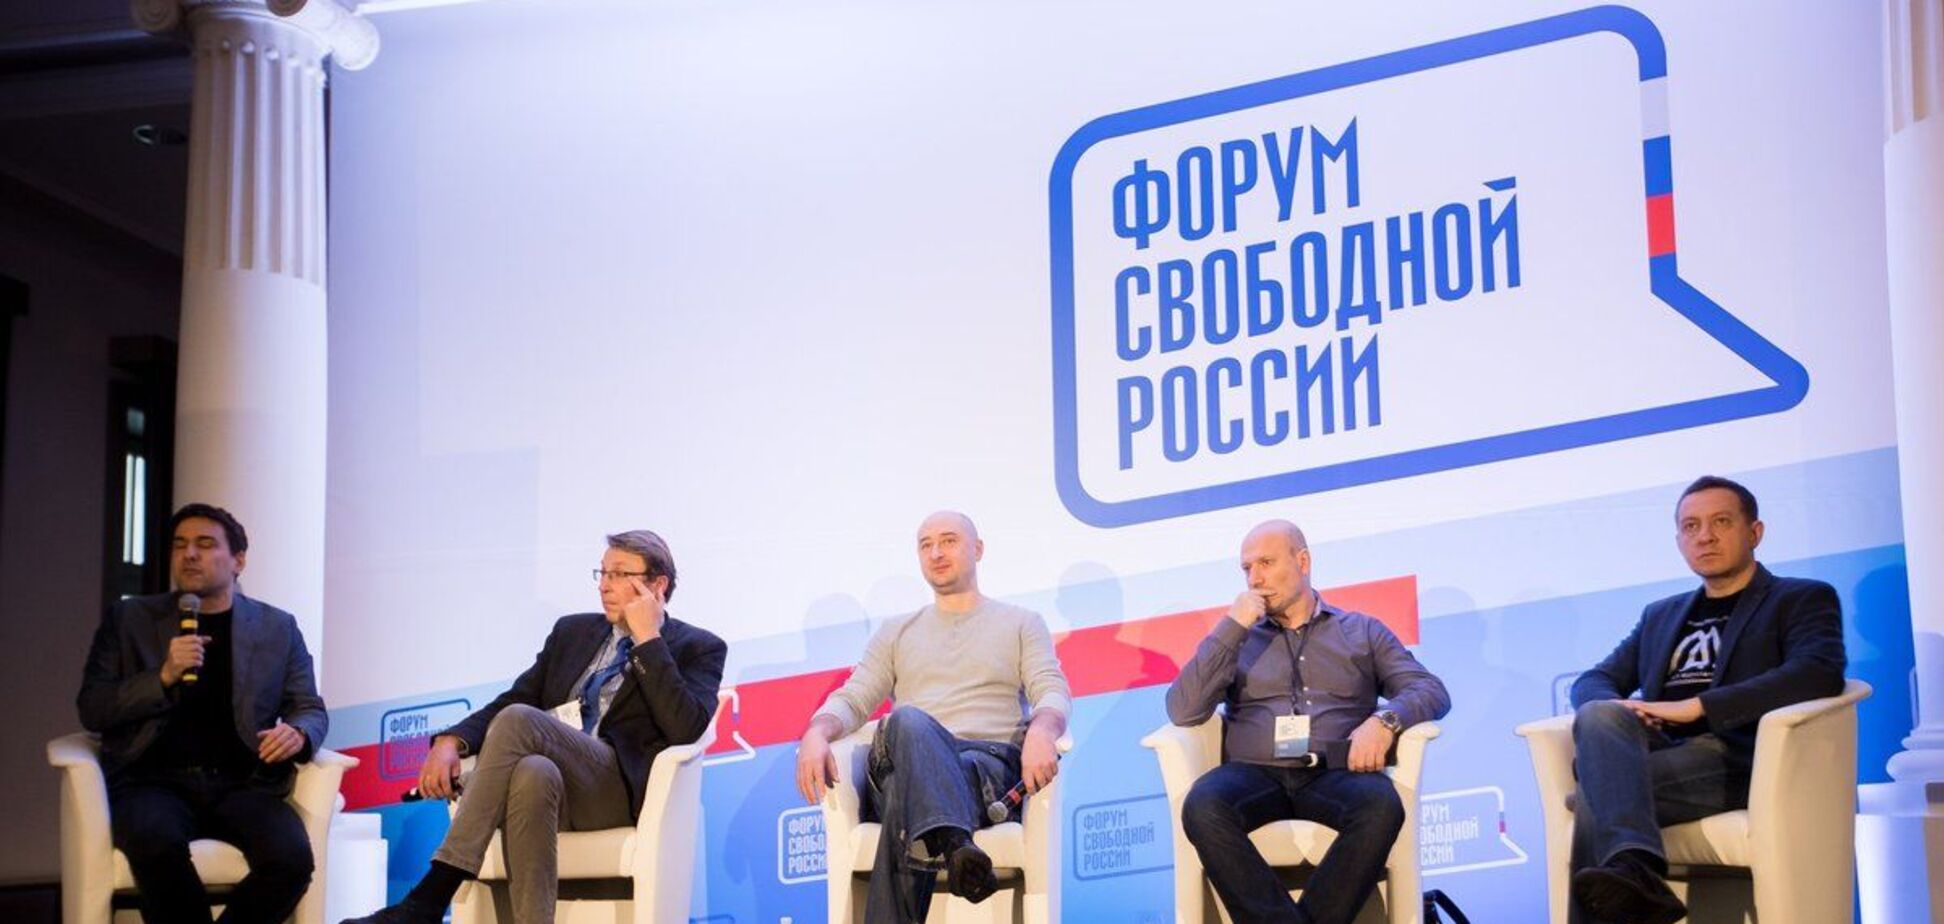 'Форум Свободной России' анонсировал на 14 мая международную конференцию в Варшаве